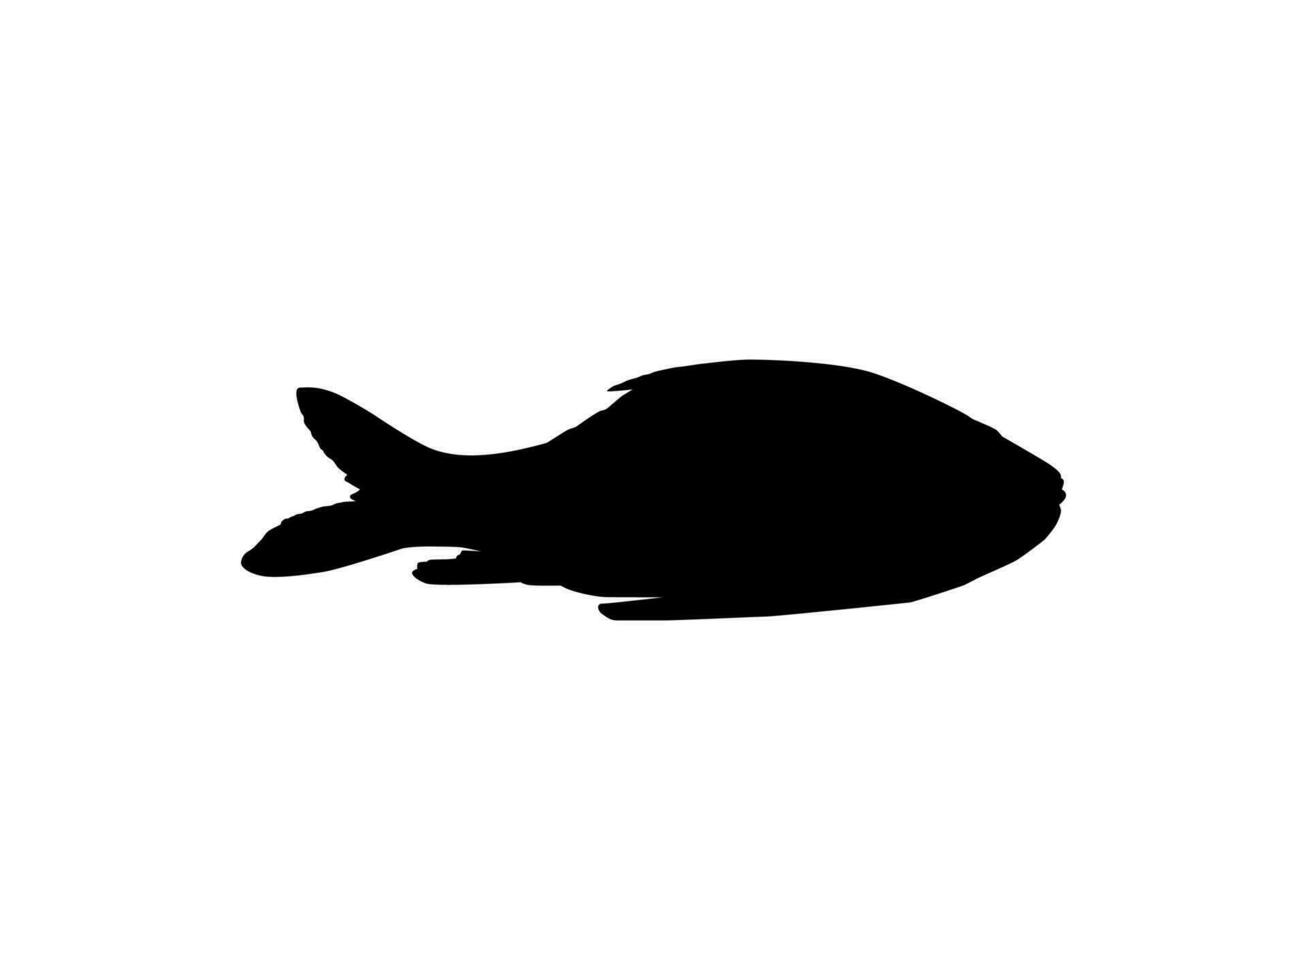 catla o Katla pesce, anche conosciuto come il maggiore Sud asiatico carpa, silhouette per icona, simbolo, logo genere, pittogramma, app, sito web o grafico design elemento. vettore illustrazione